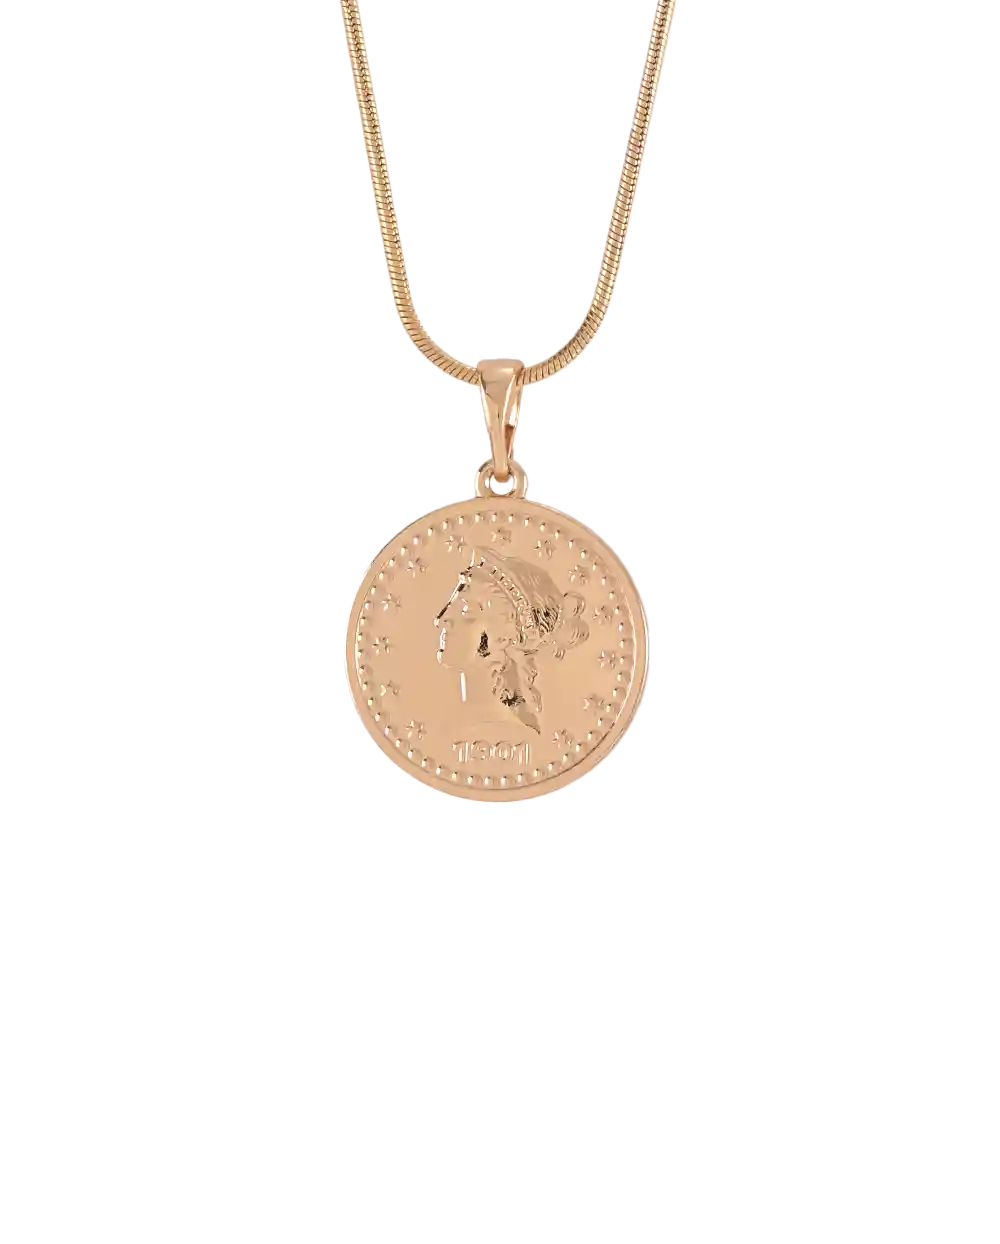 خرید گردنبند زنانه طرح سکه طلا مدل 1842 طرح طلا قیمت 199 هزارتومان به همراه ارسال رایگان به سراسر ایران درب منزل و جعبه ی کادویی شکیل